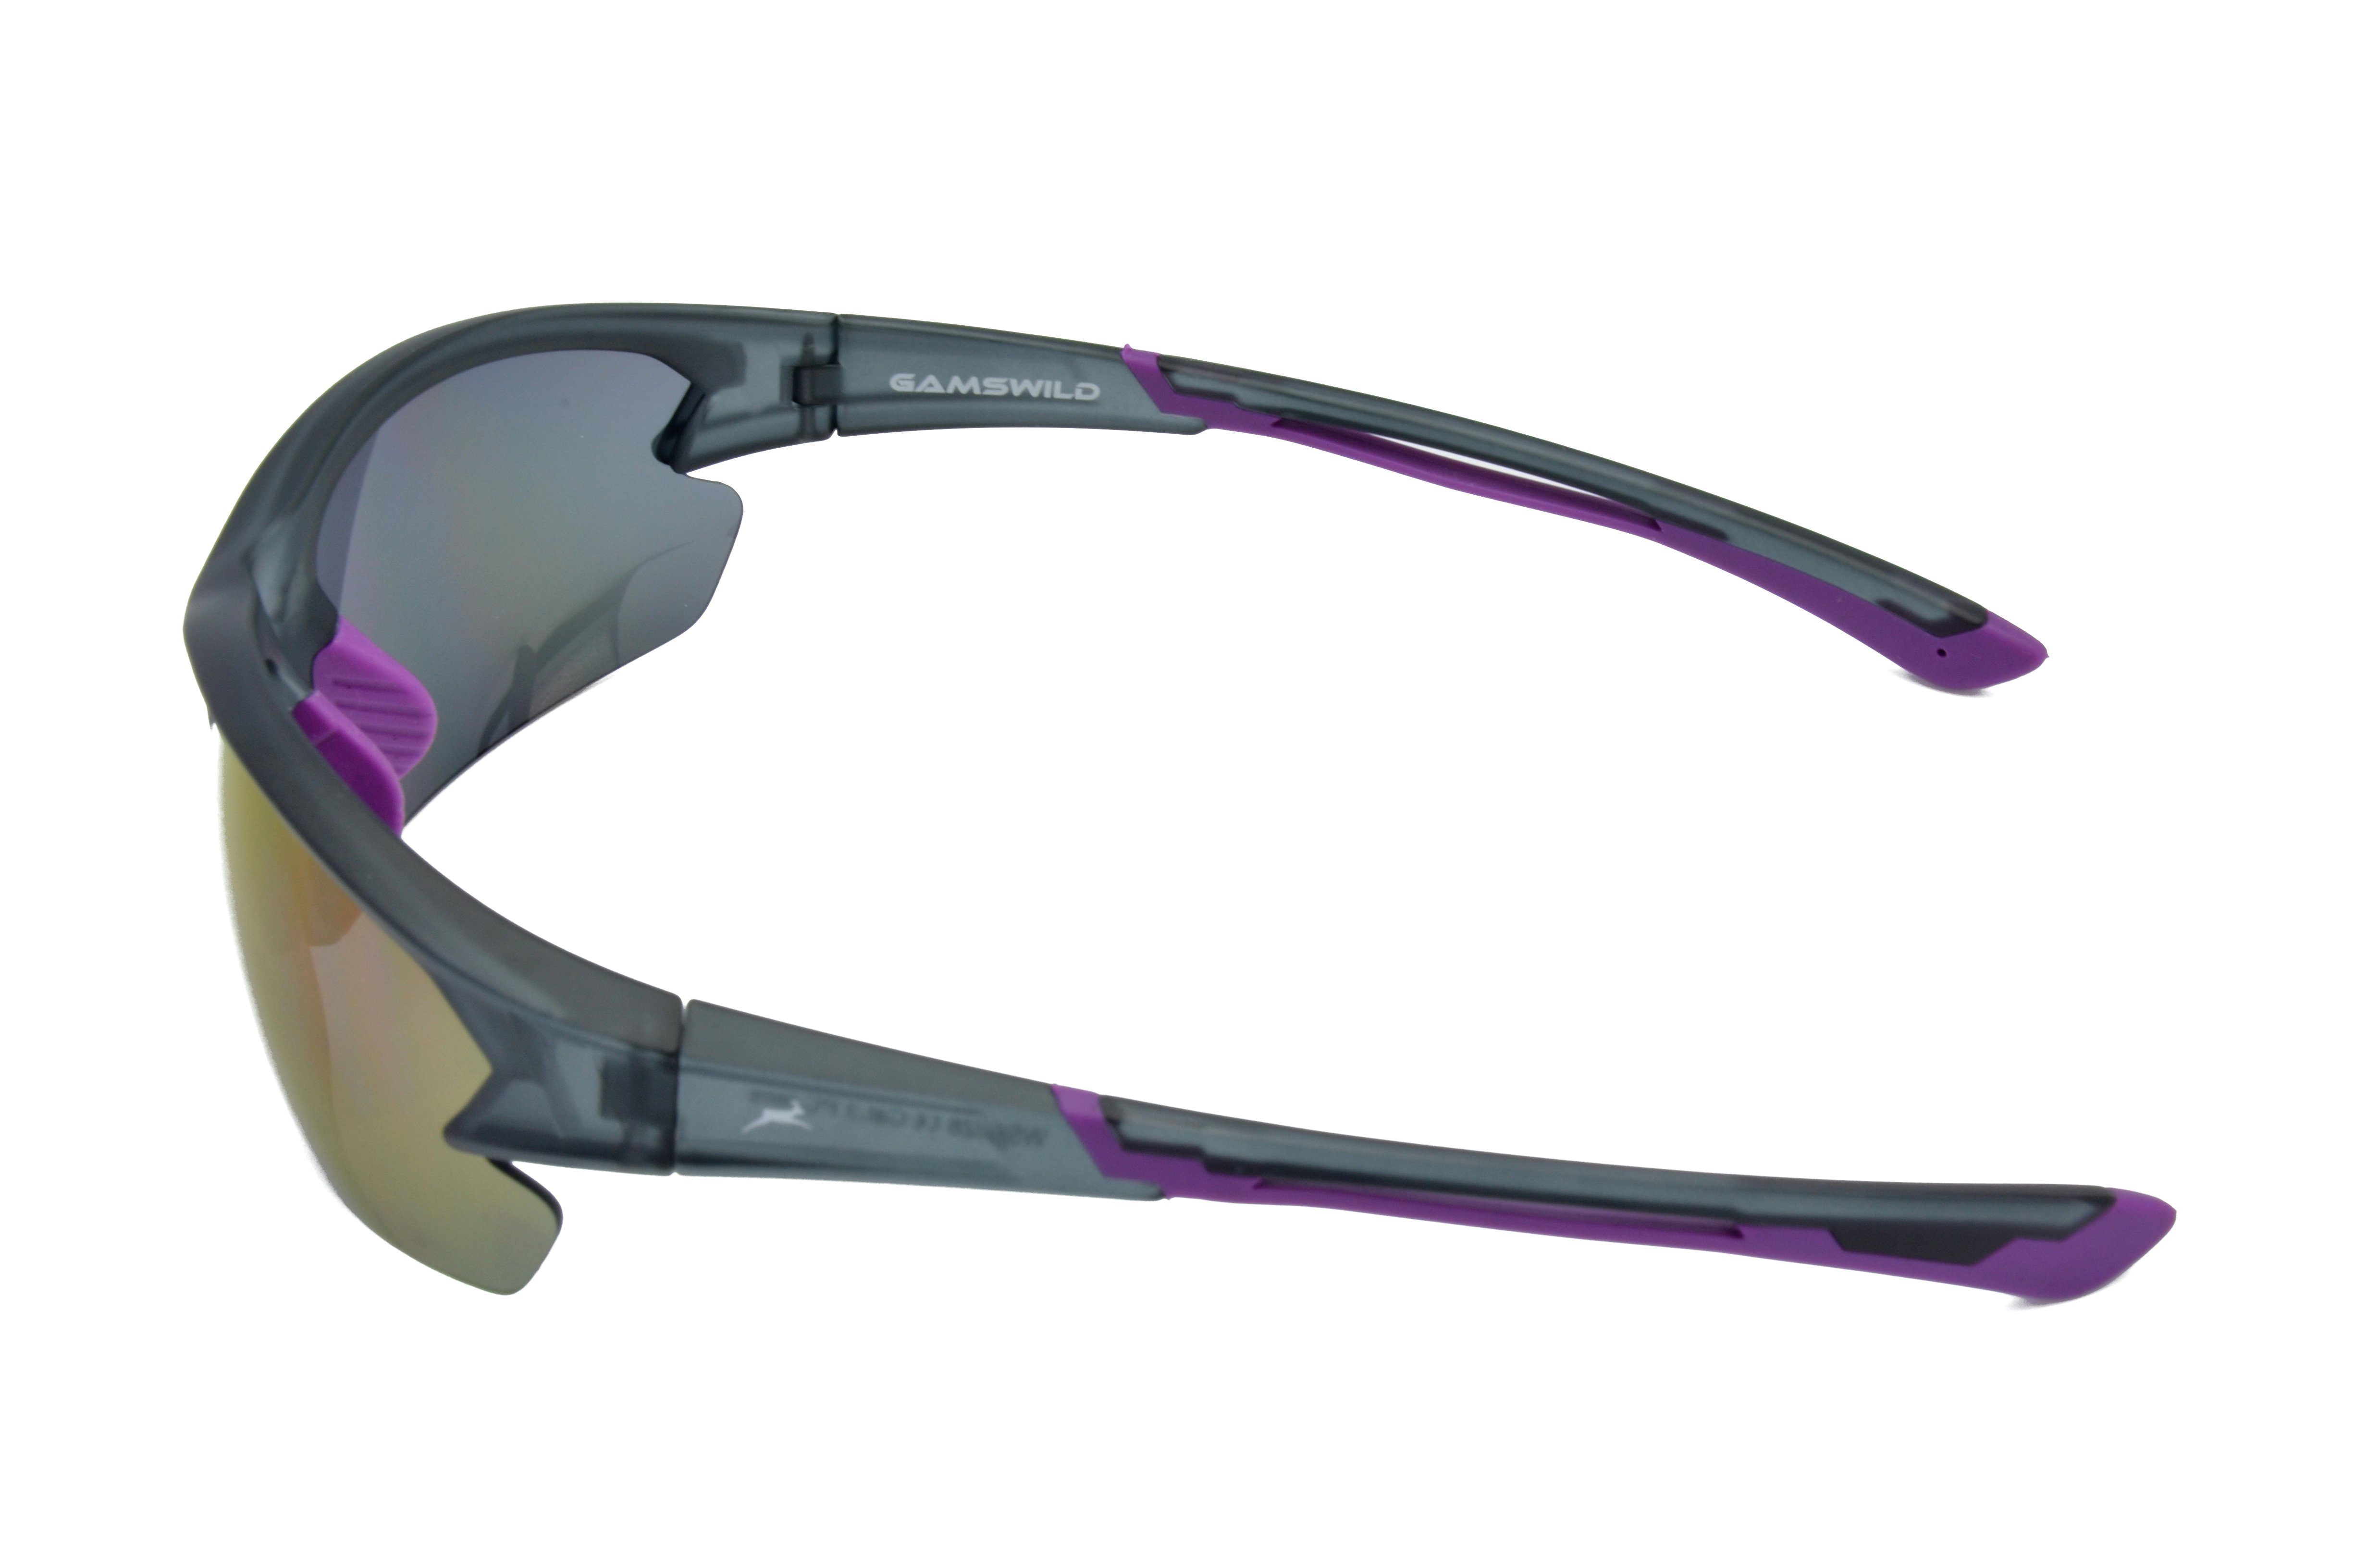 Halbrahmenbrille Skibrille Sonnenbrille Fahrradbrille Unisex, blau, Gamswild Sportbrille violett, WS6028 Herren Damen rot-orange,